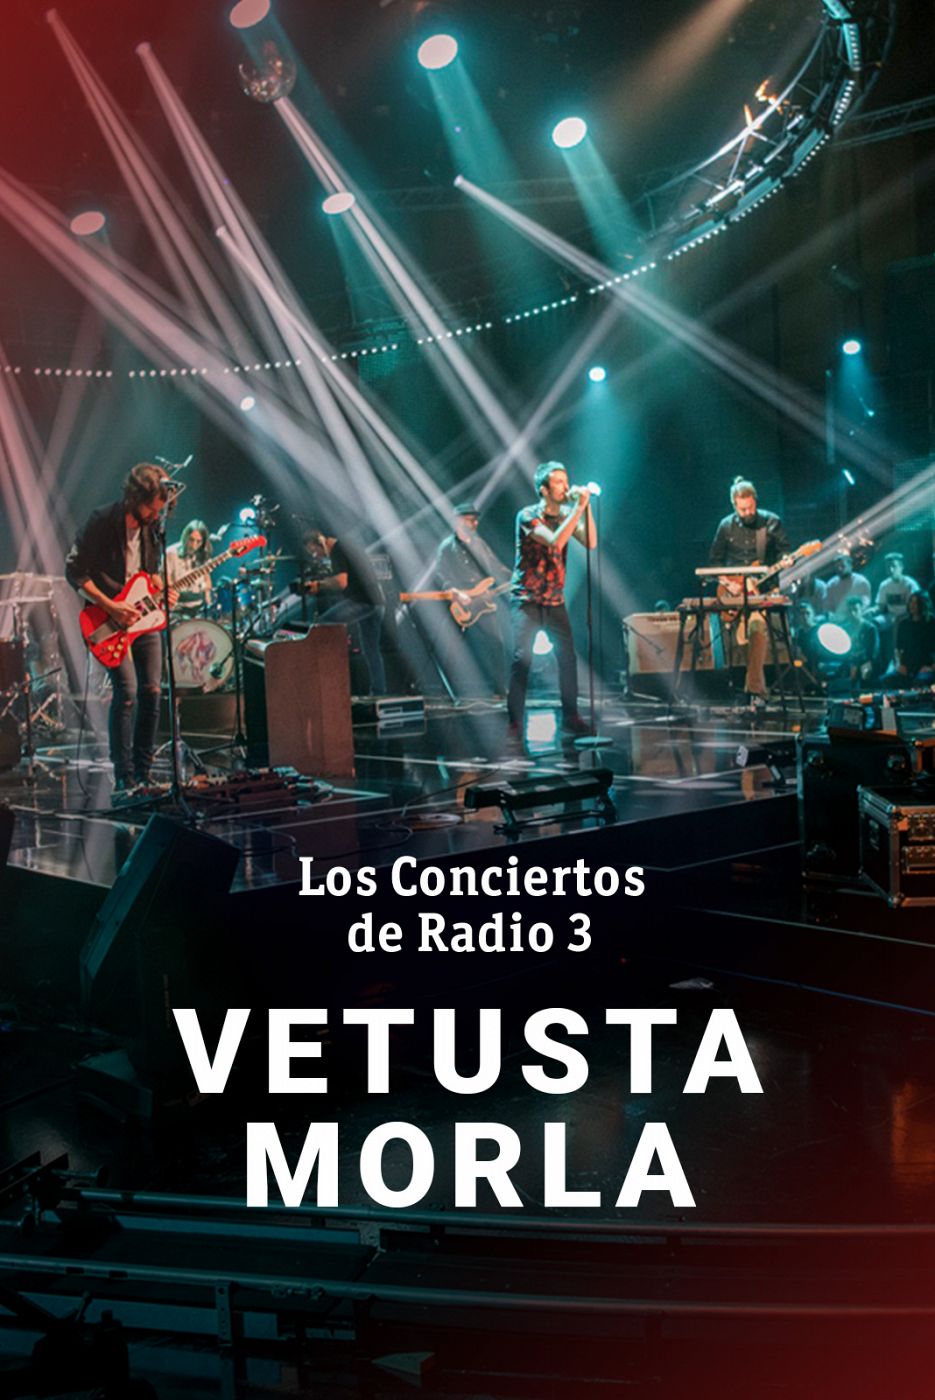  Los conciertos de Radio 3 - Vetusta Morla - ver ahora